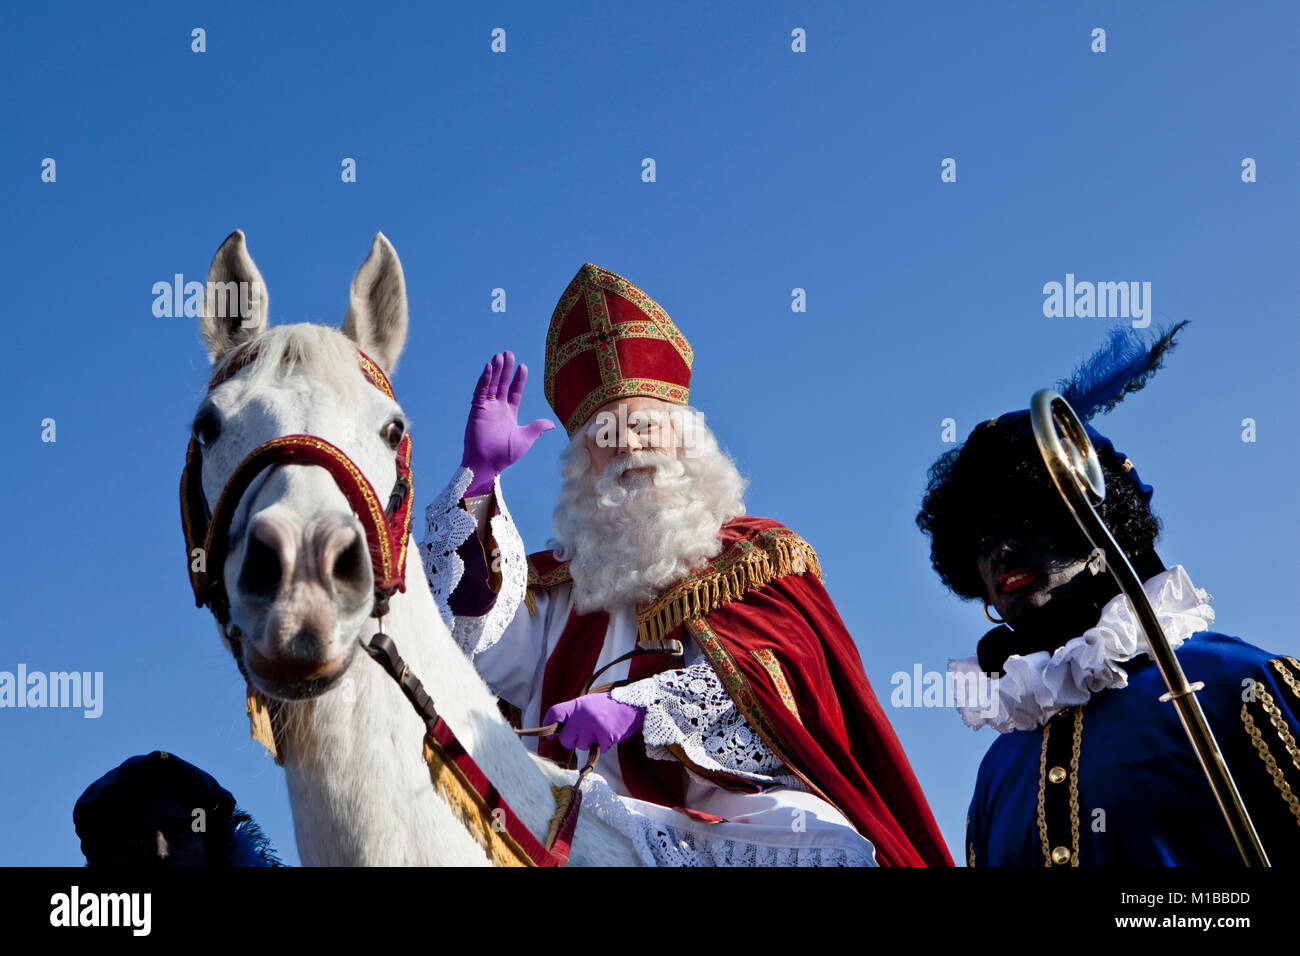 Den Niederlanden, Graveland, Festival des Sinterklaas oder Sint Nicolaas, jährlich am Vorabend der Nikolaus am 5. Dezember gefeiert. Stockfoto